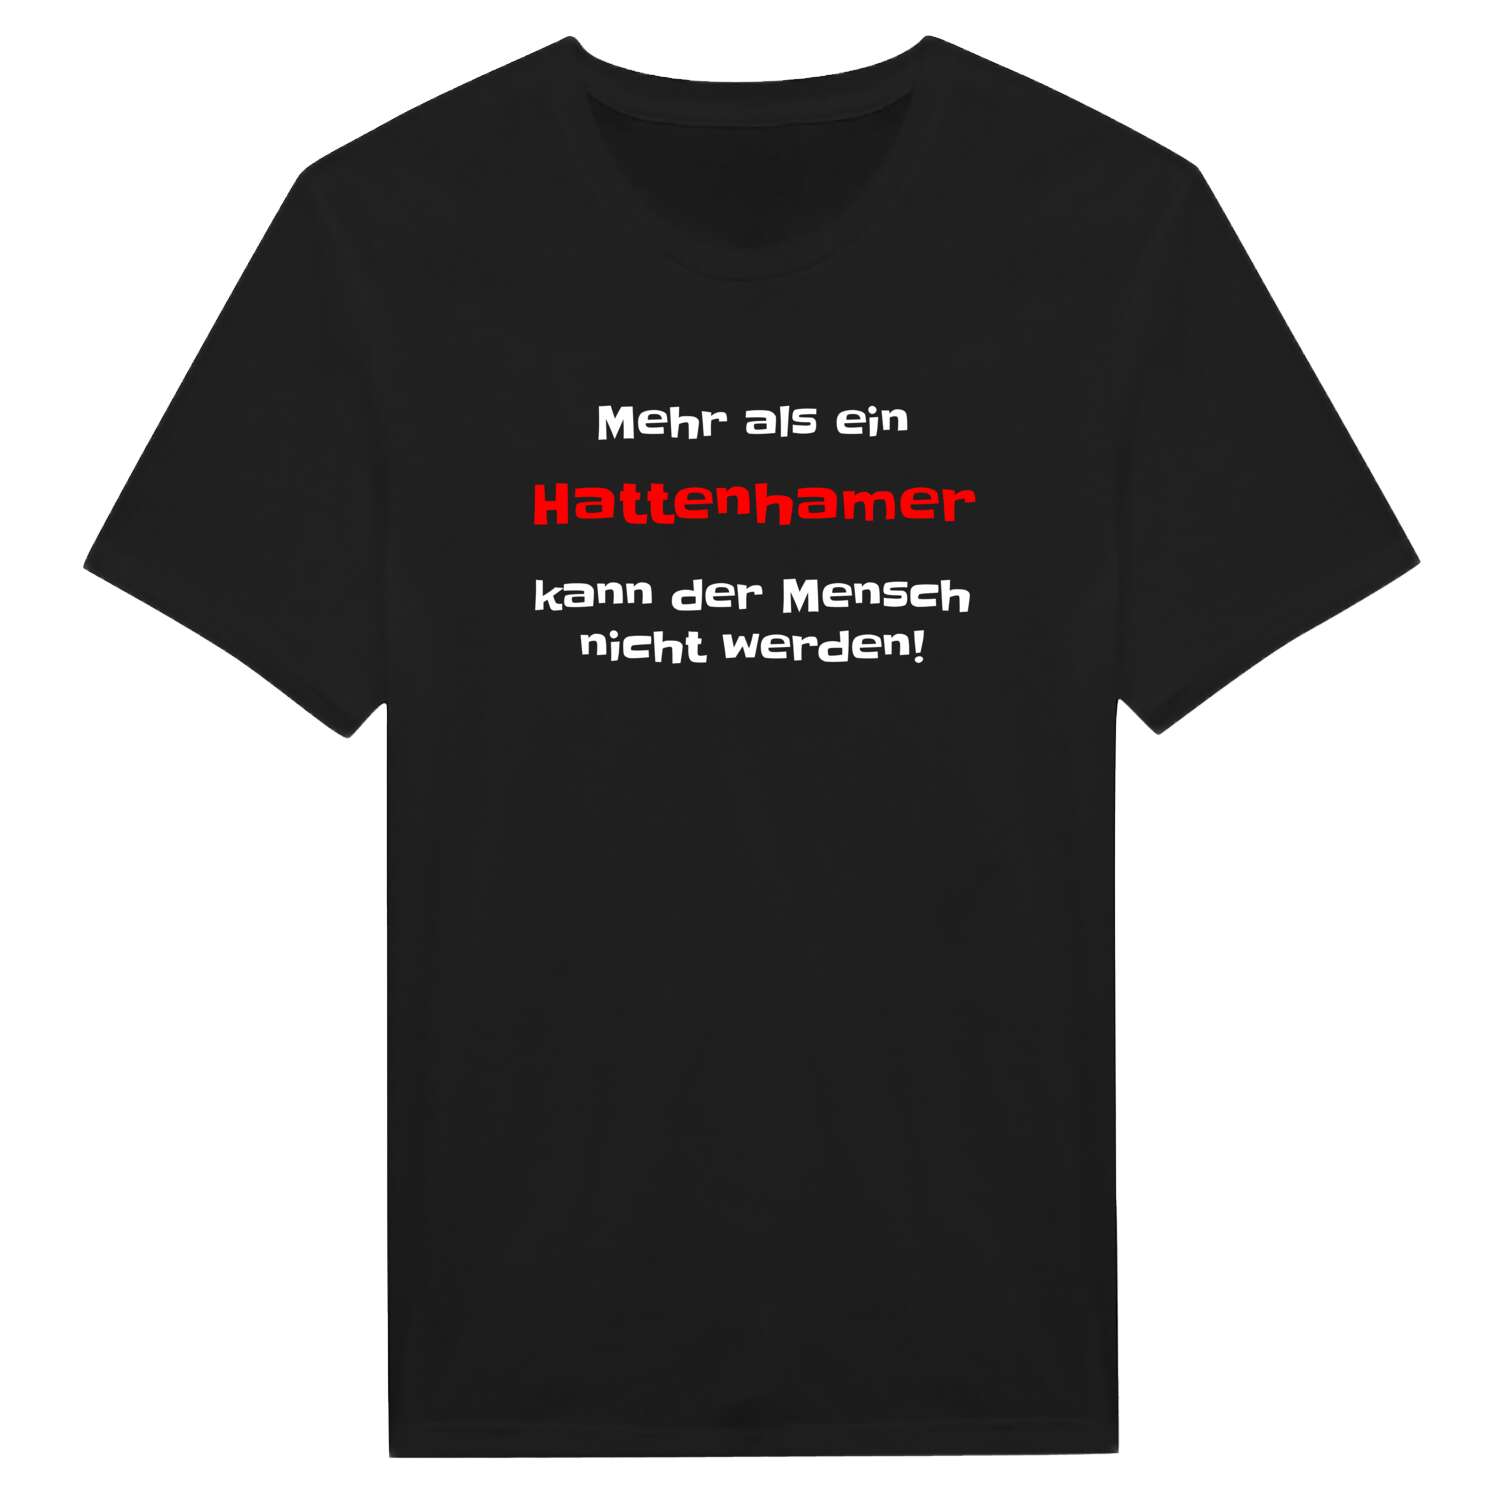 Hattenham T-Shirt »Mehr als ein«